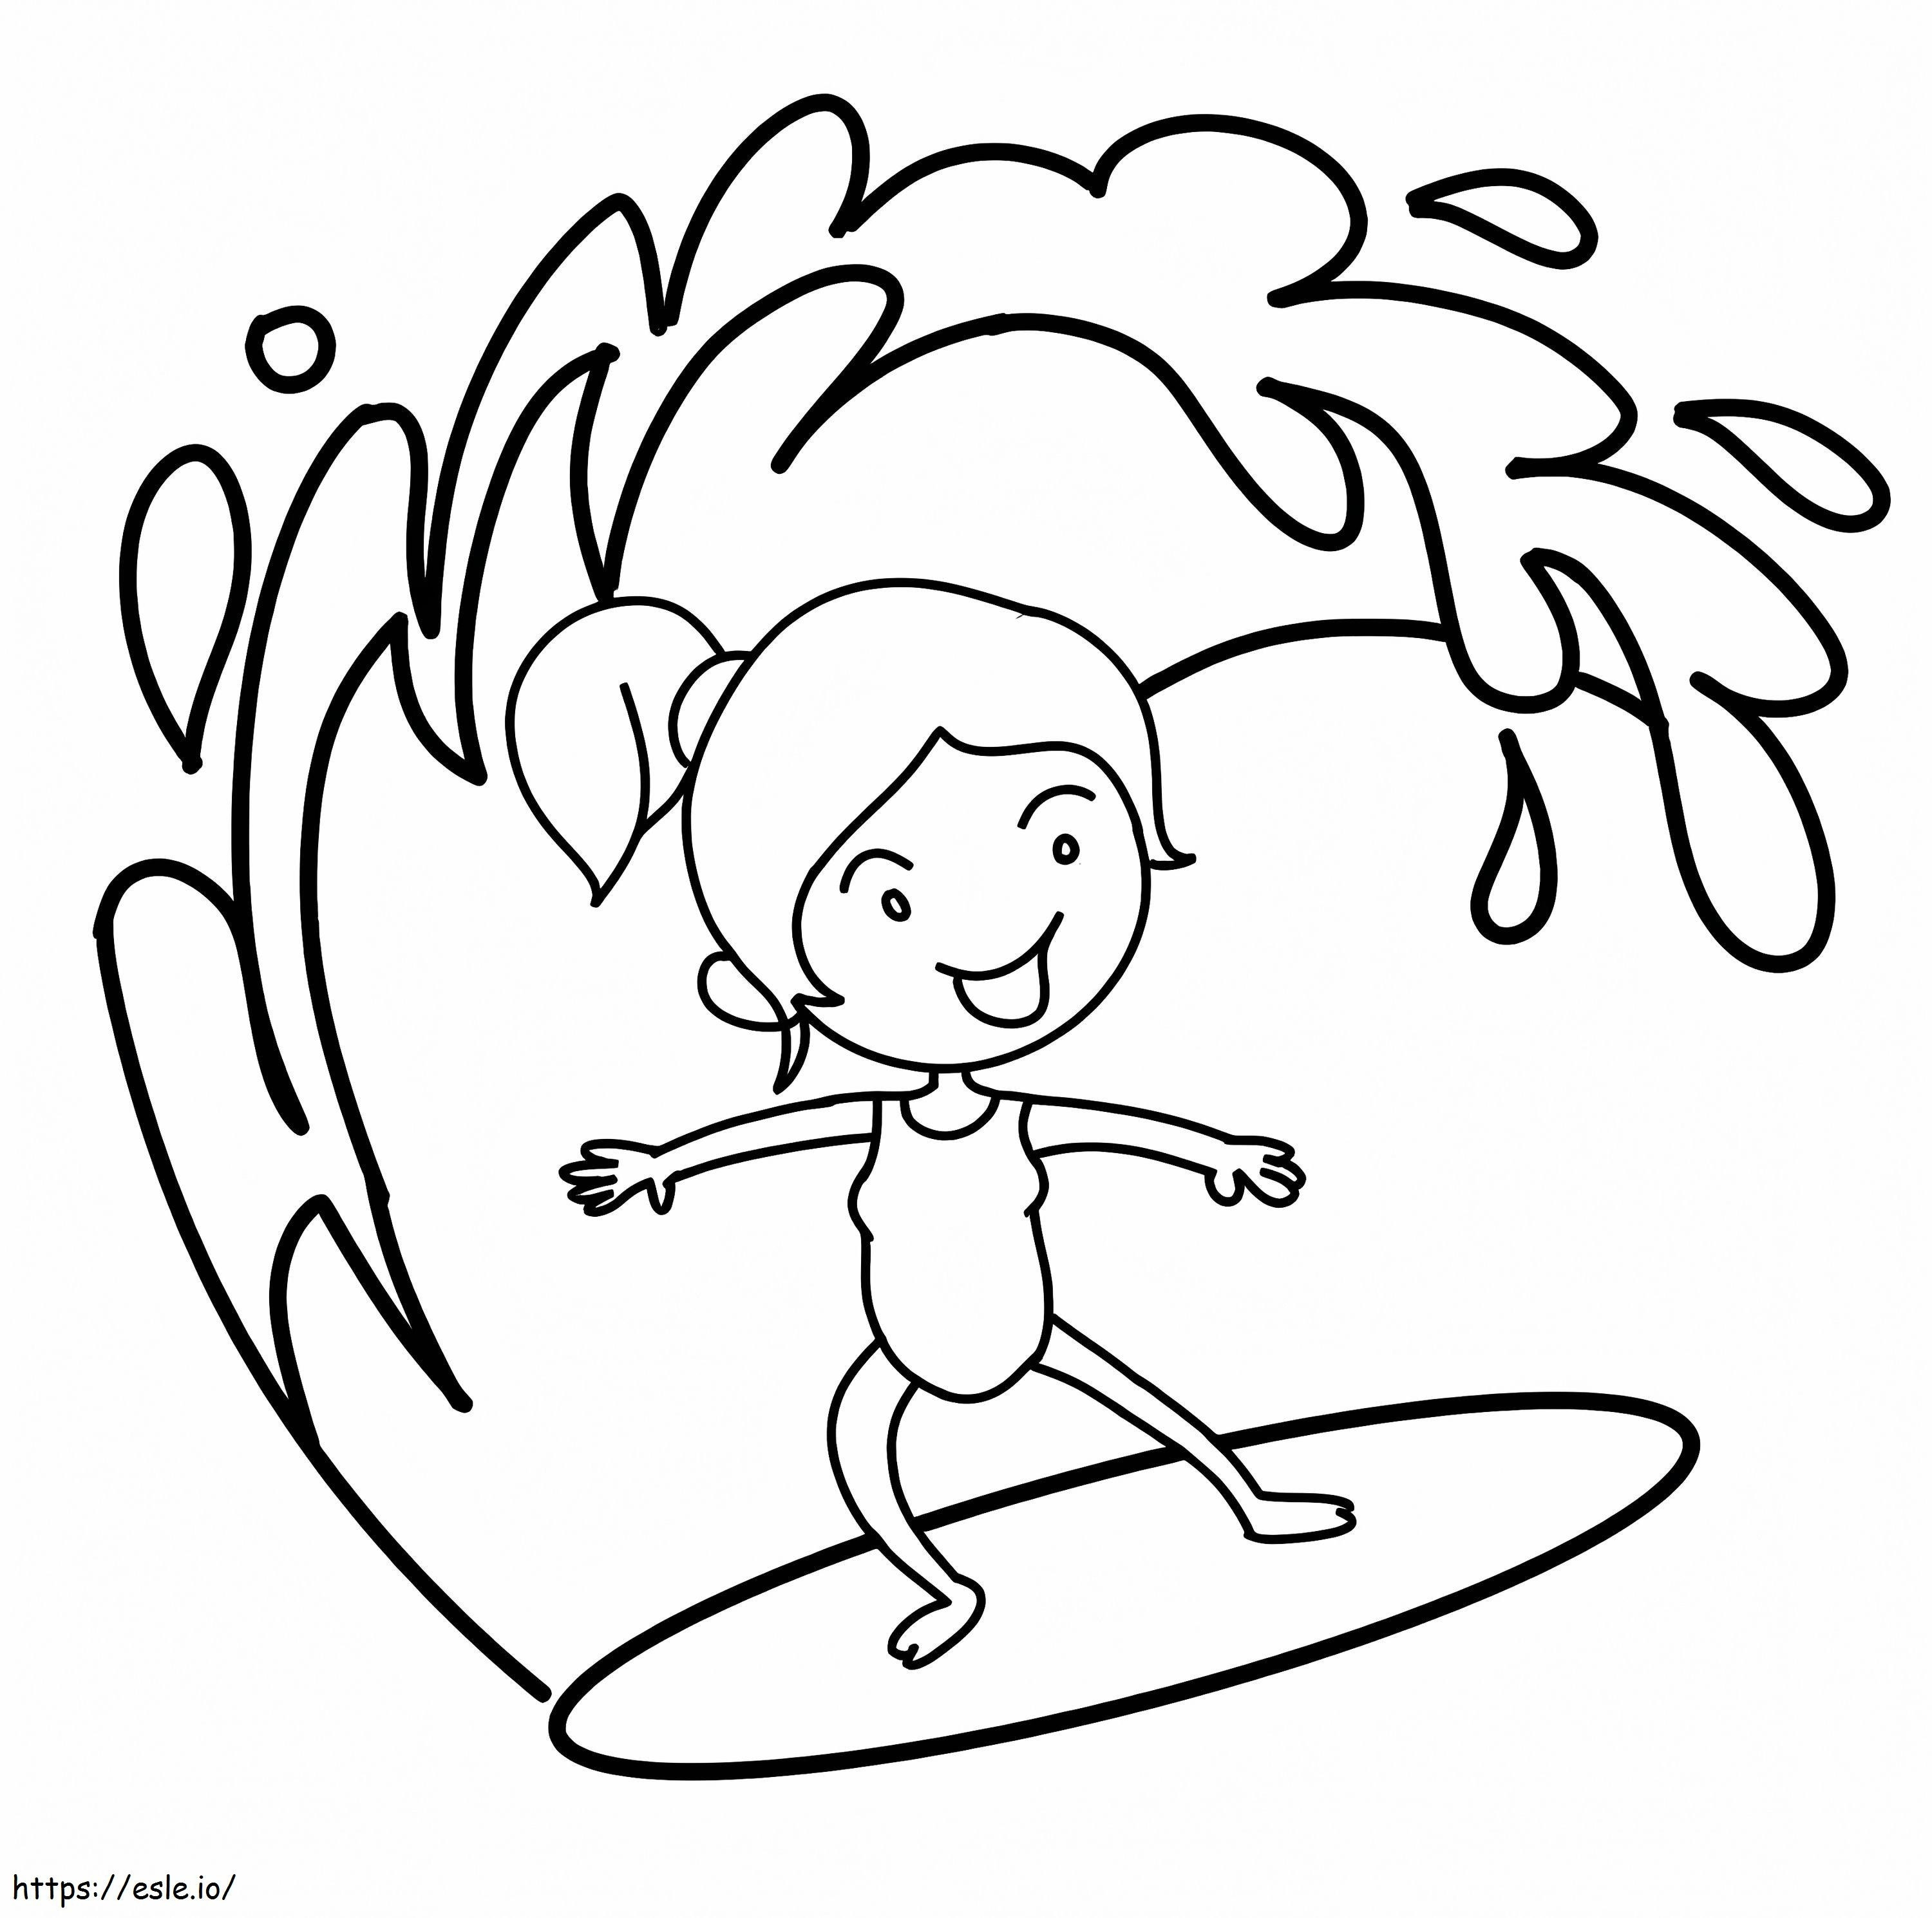 Kleines Mädchen beim Surfen ausmalbilder